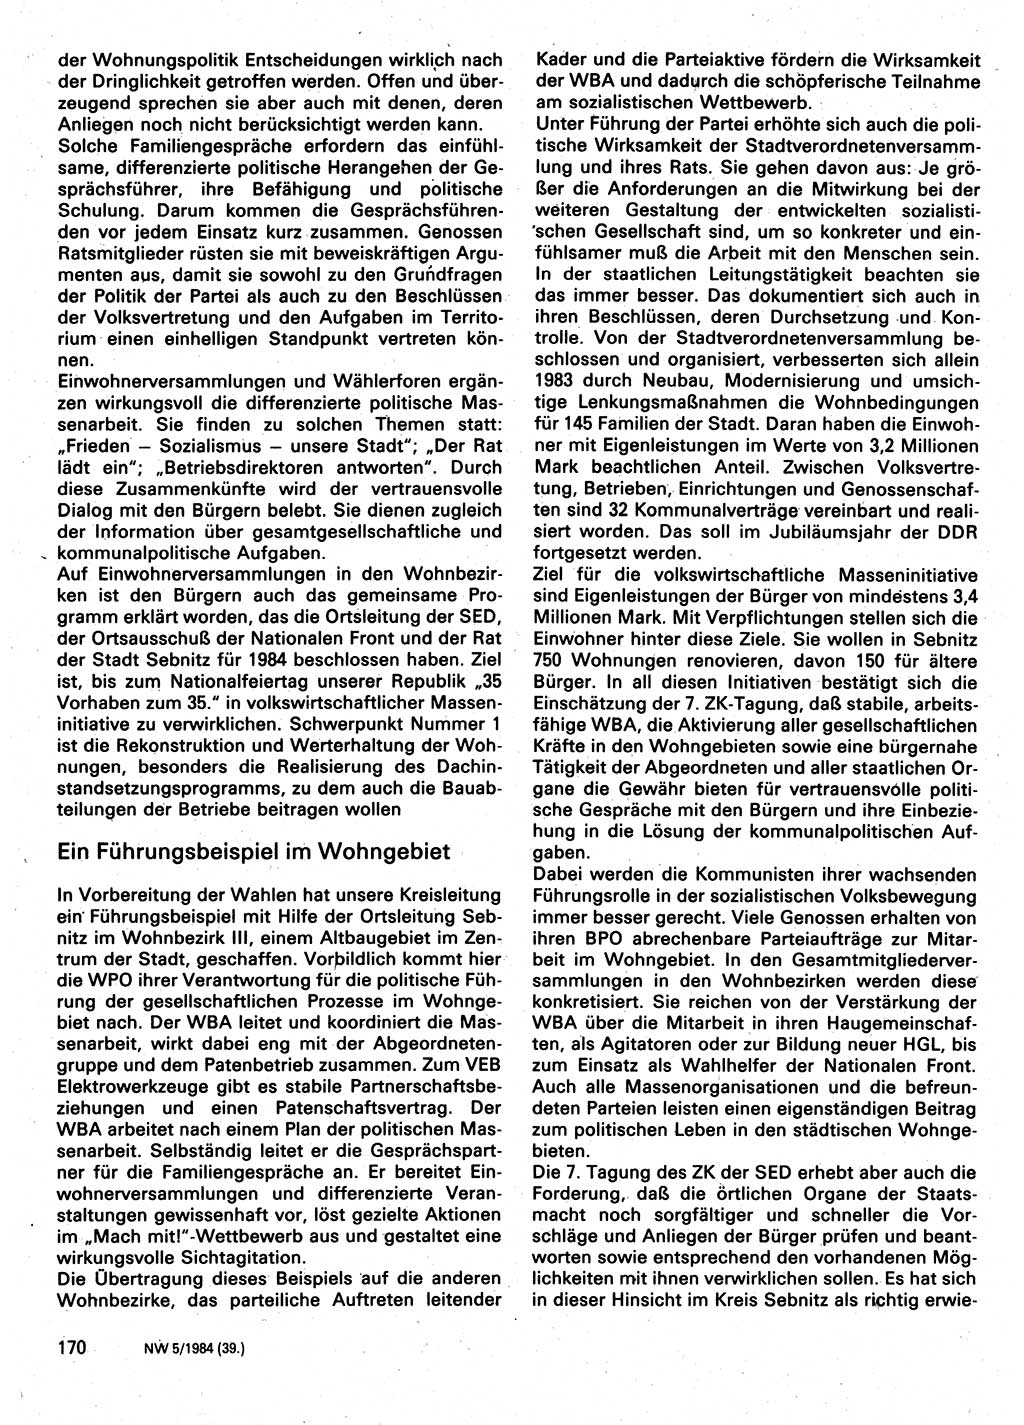 Neuer Weg (NW), Organ des Zentralkomitees (ZK) der SED (Sozialistische Einheitspartei Deutschlands) für Fragen des Parteilebens, 39. Jahrgang [Deutsche Demokratische Republik (DDR)] 1984, Seite 170 (NW ZK SED DDR 1984, S. 170)